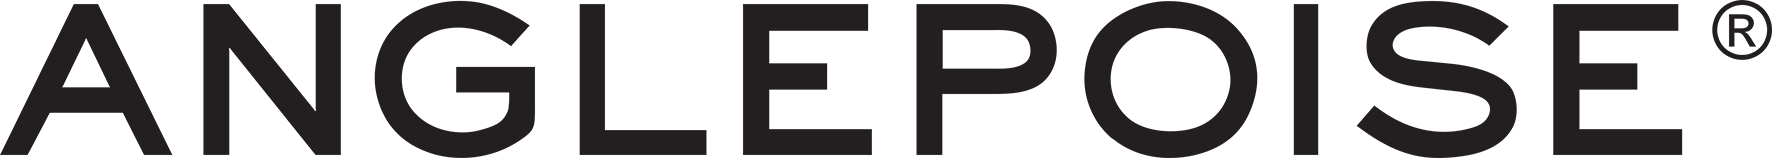 Anglepoise-Logo-Transparent-BGround